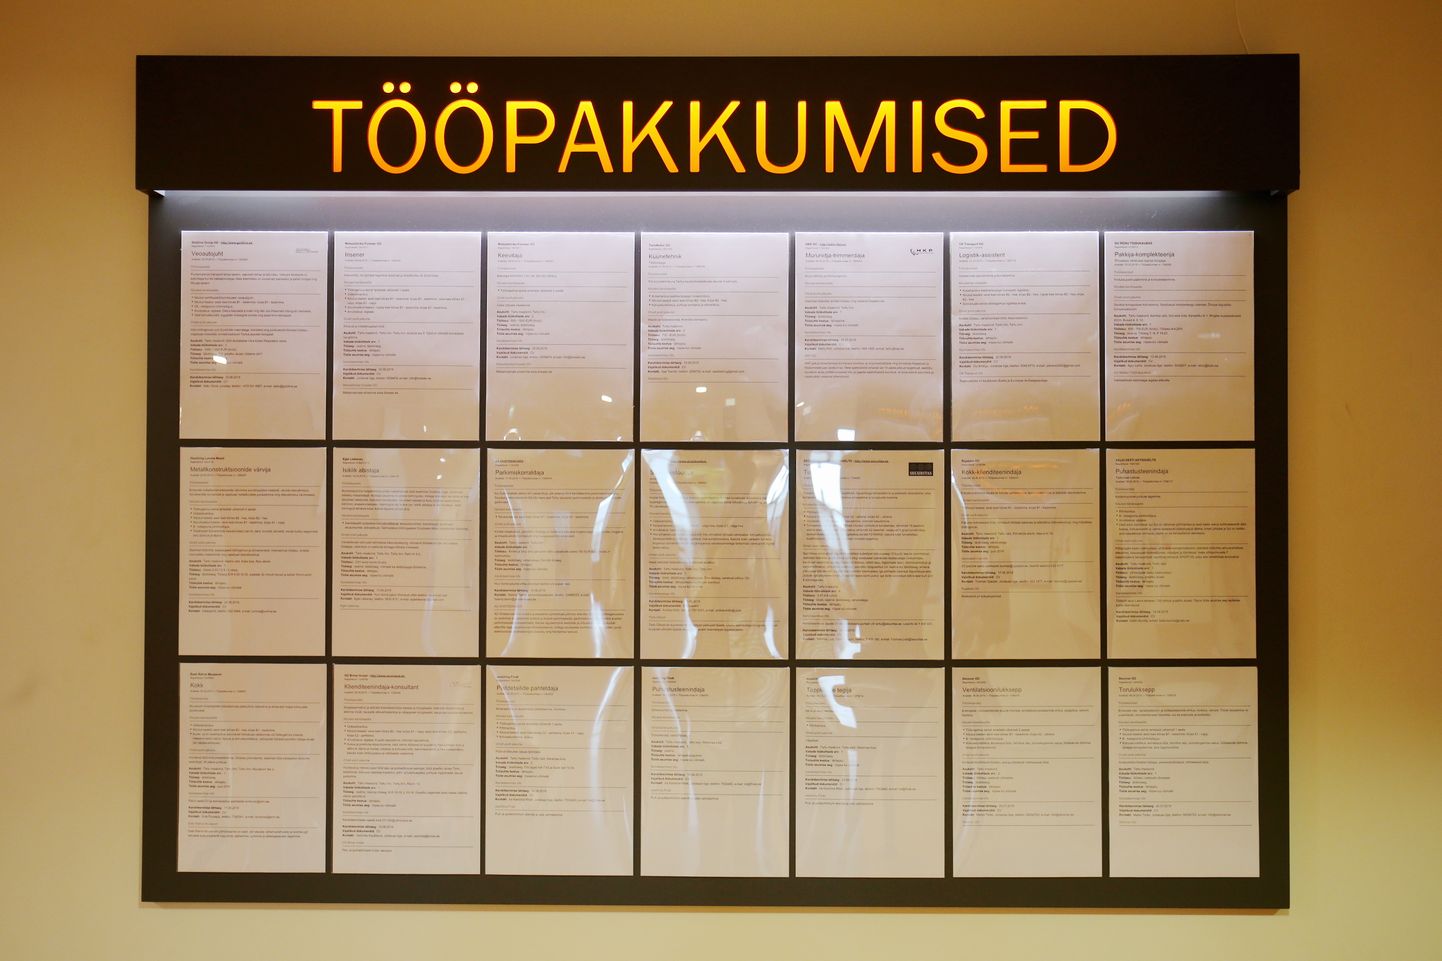 Tööpakkumist stend Töötukassa Tartumaa osakonnas.